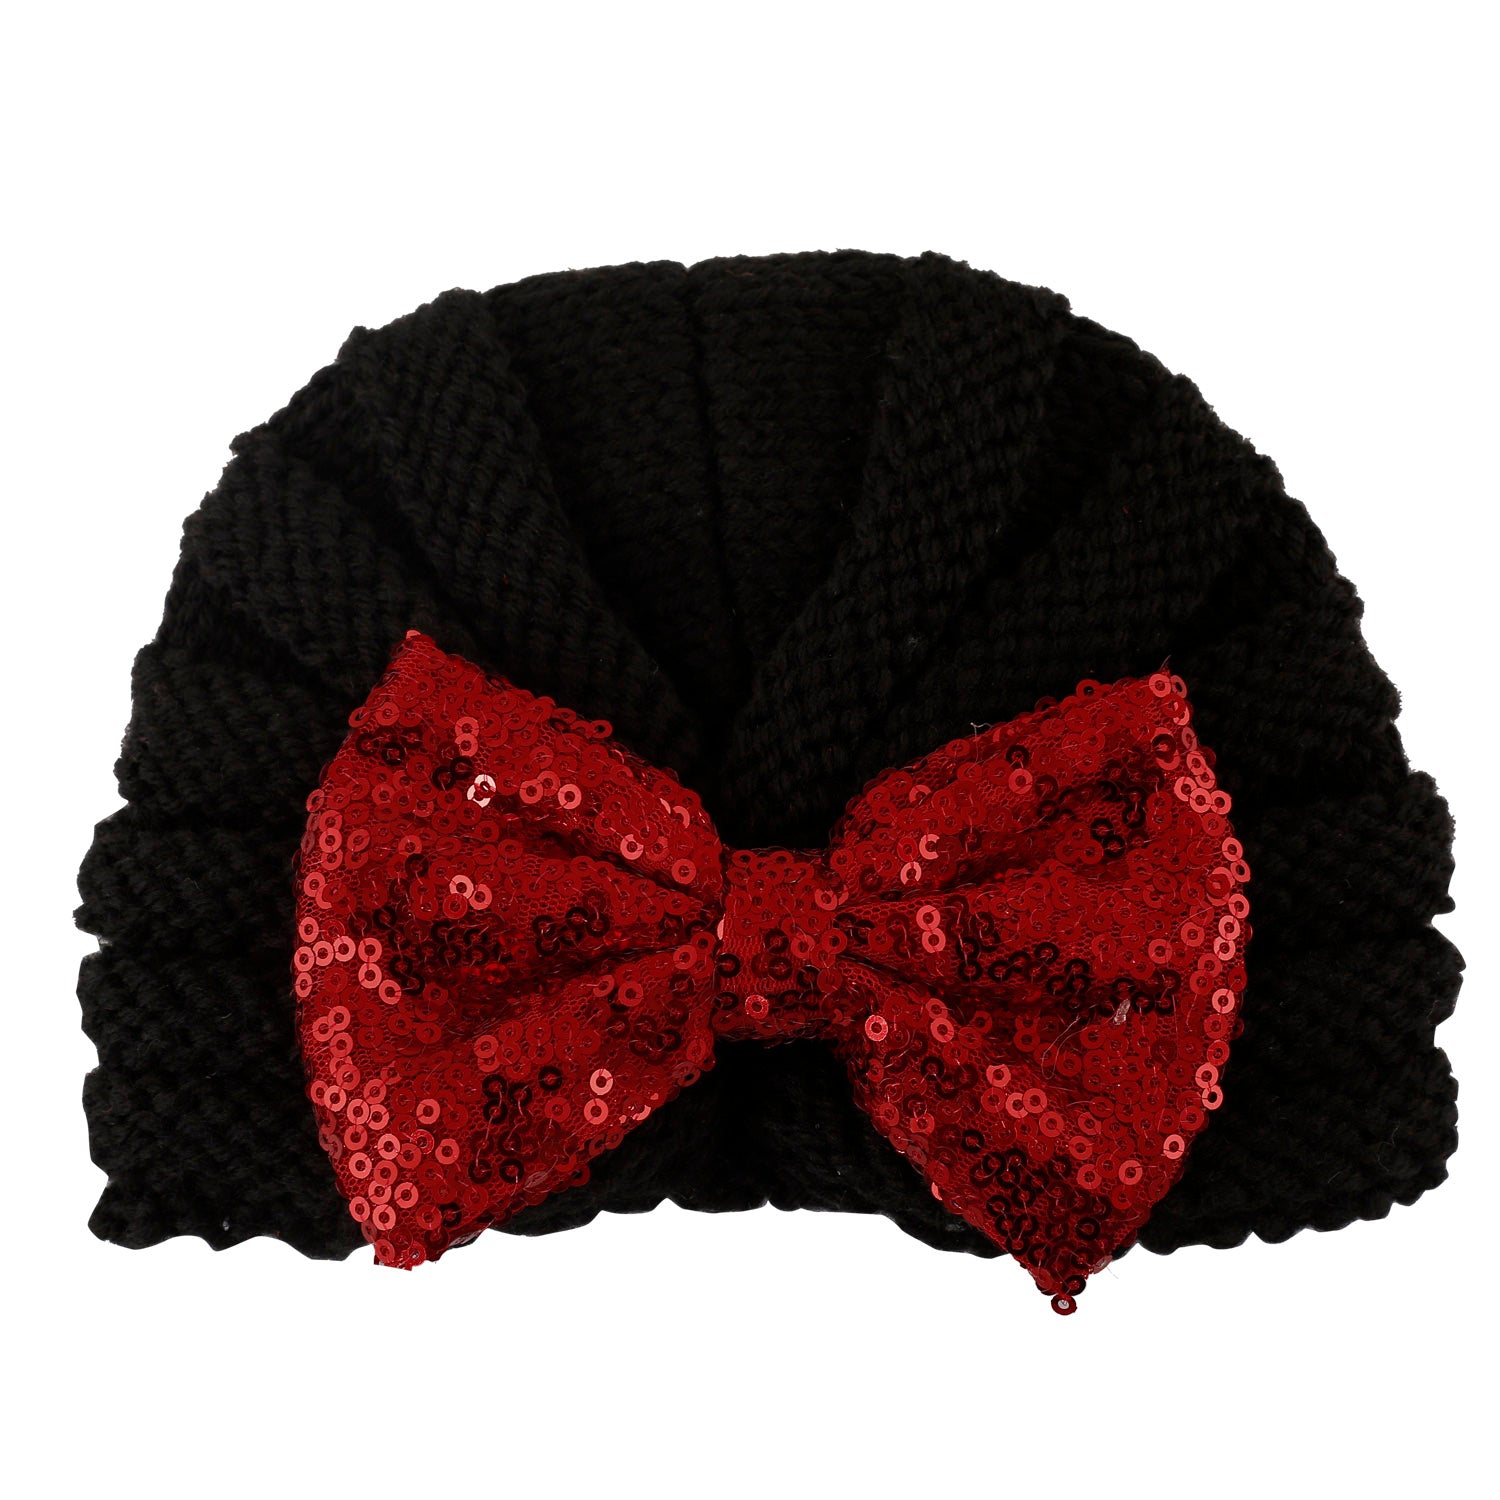 Partywear Black Turban Cap - Baby Moo